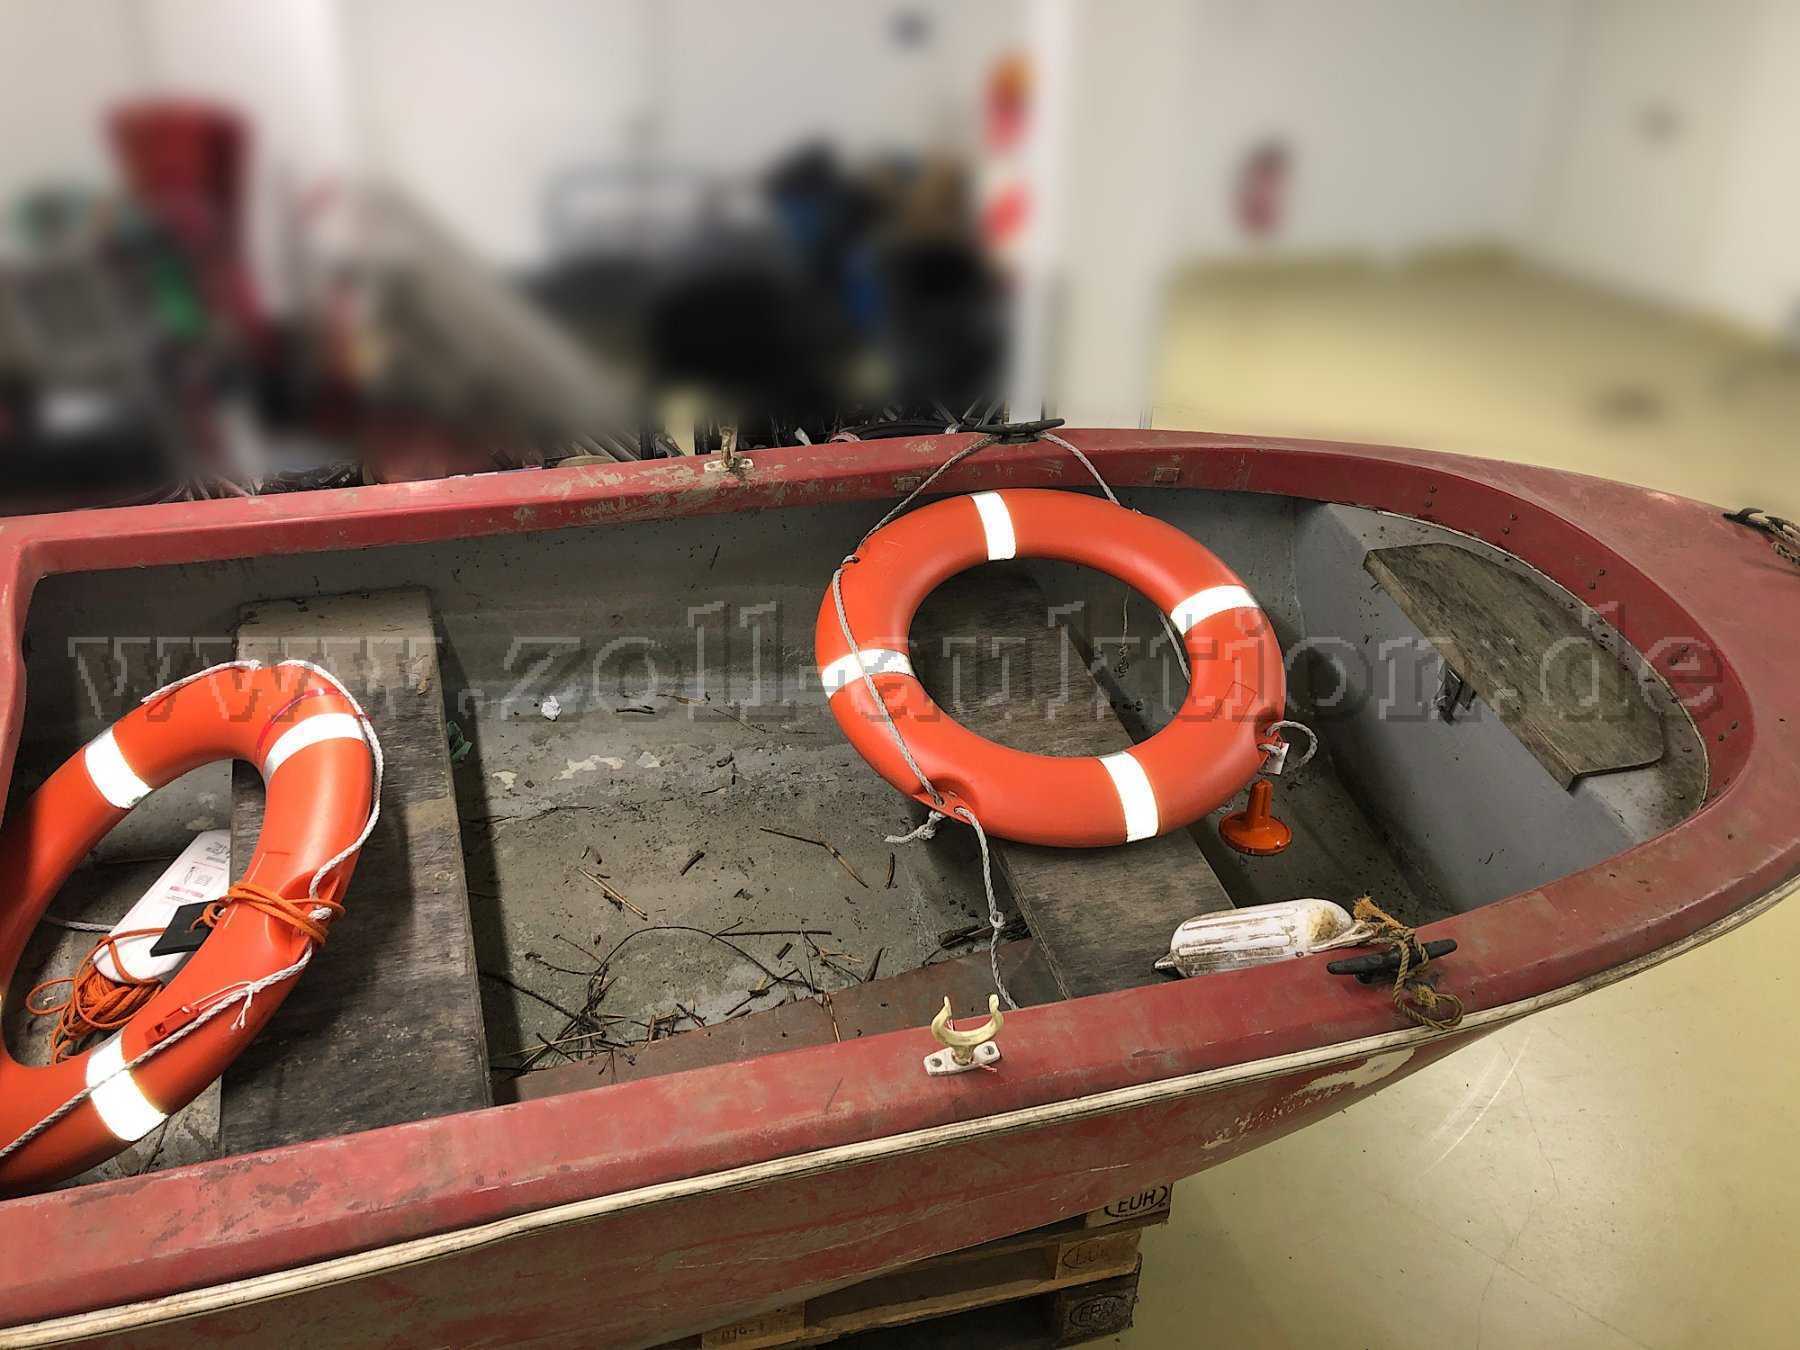 Gebrauchtes Ruderboot von einer unbekannten Marke (mit Zubehör, ohne Motor), Innenraum (stark verschmutzt)